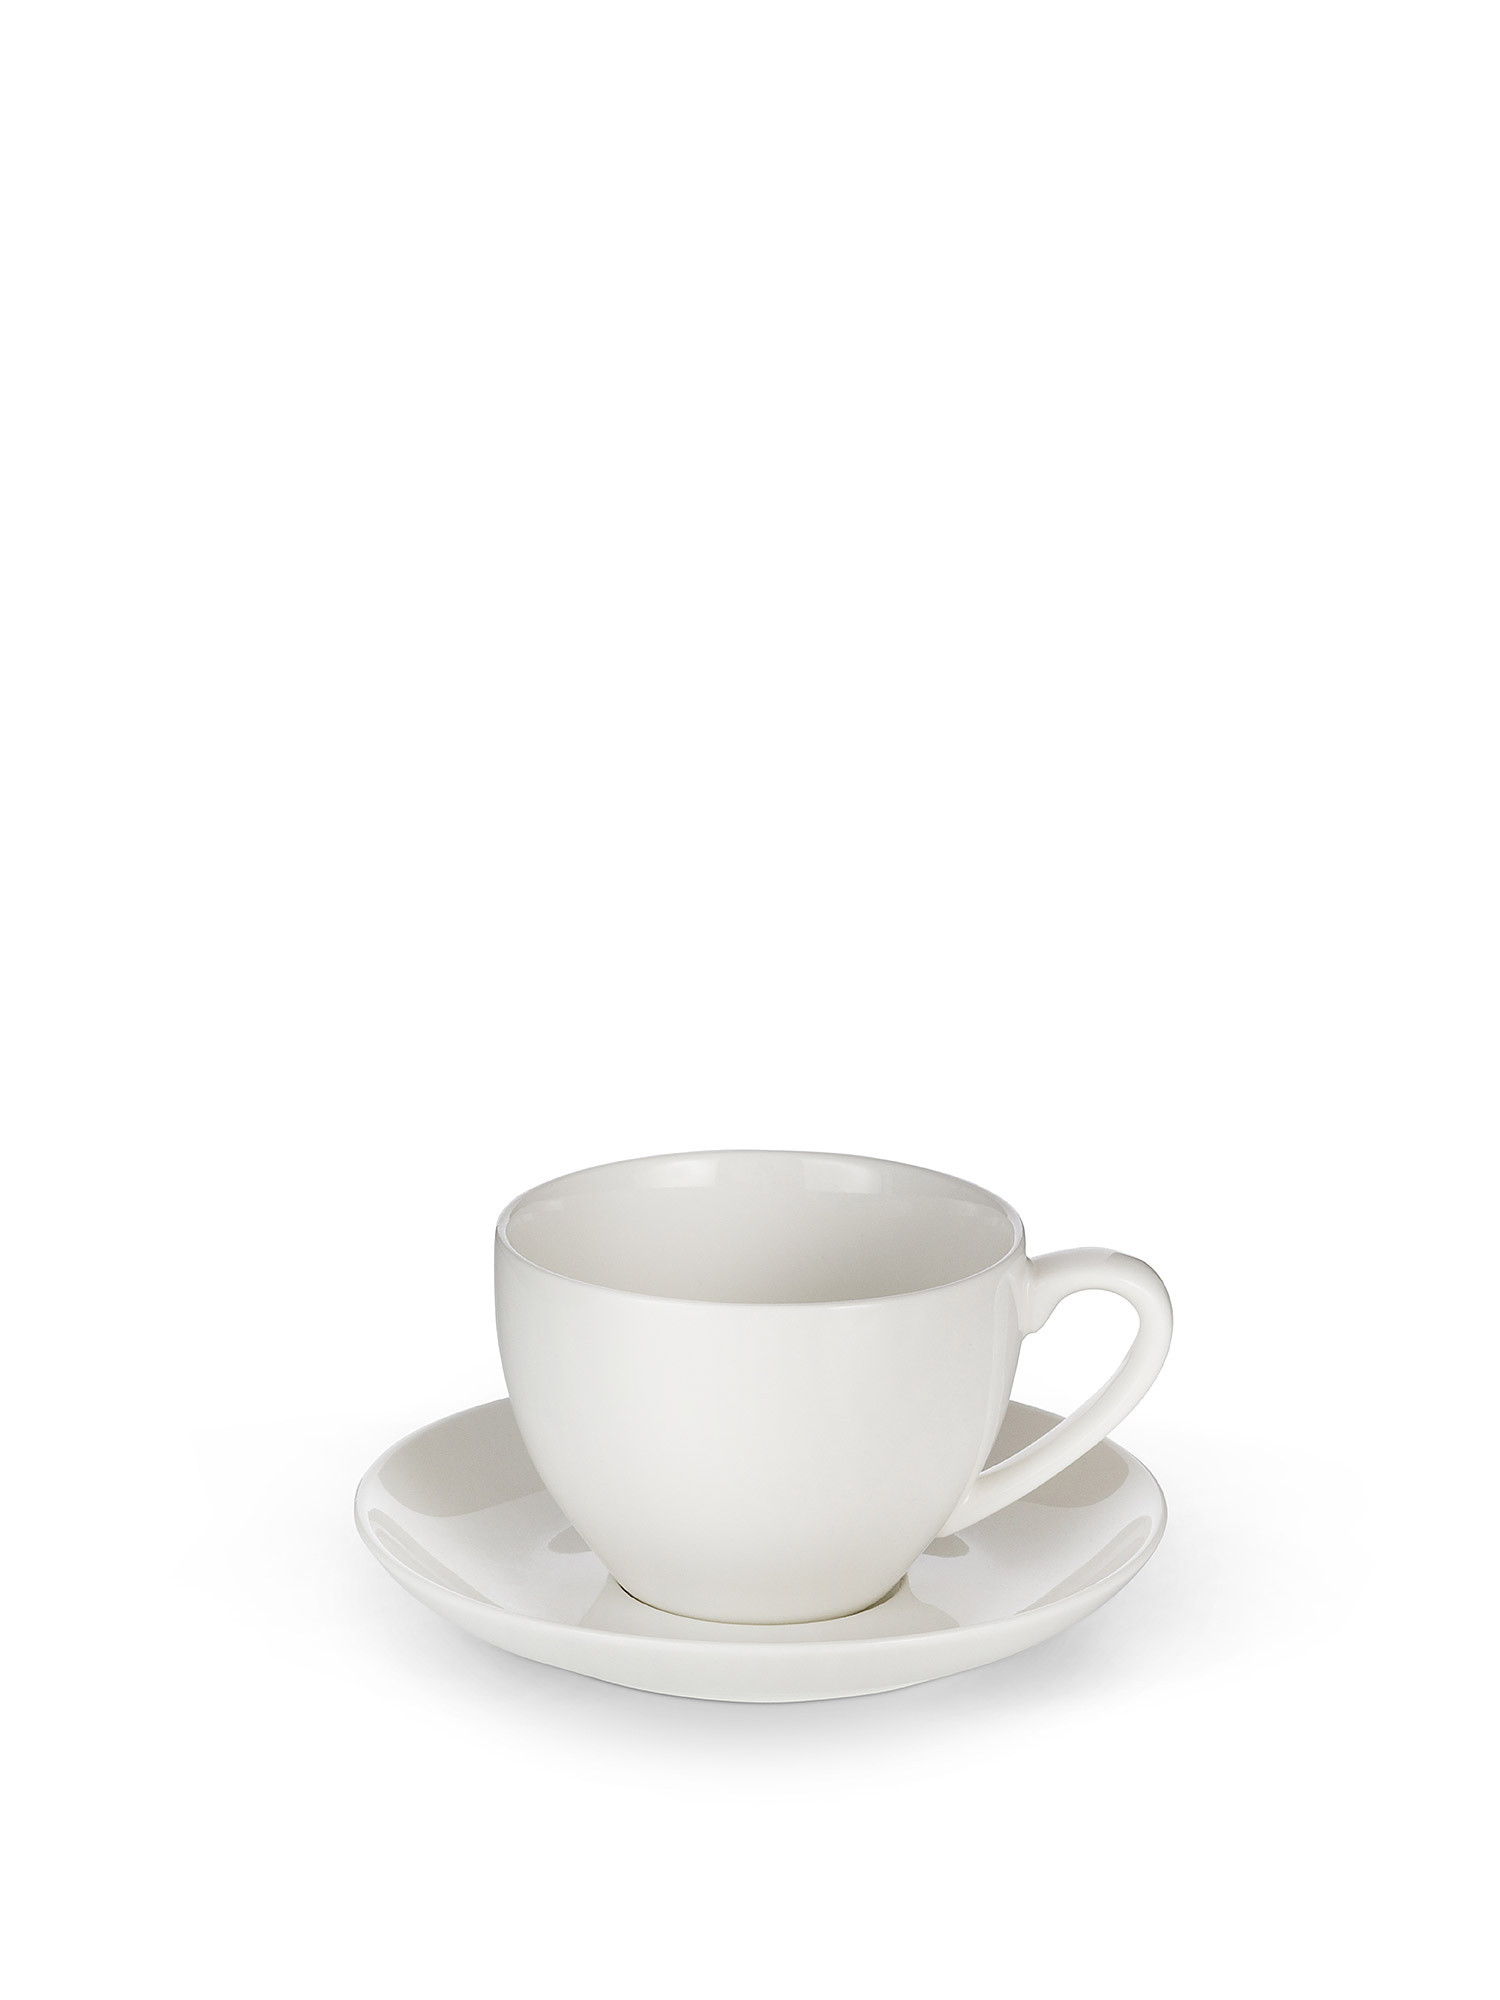 Tazza da tè porcellana bianca, Bianco, large image number 0